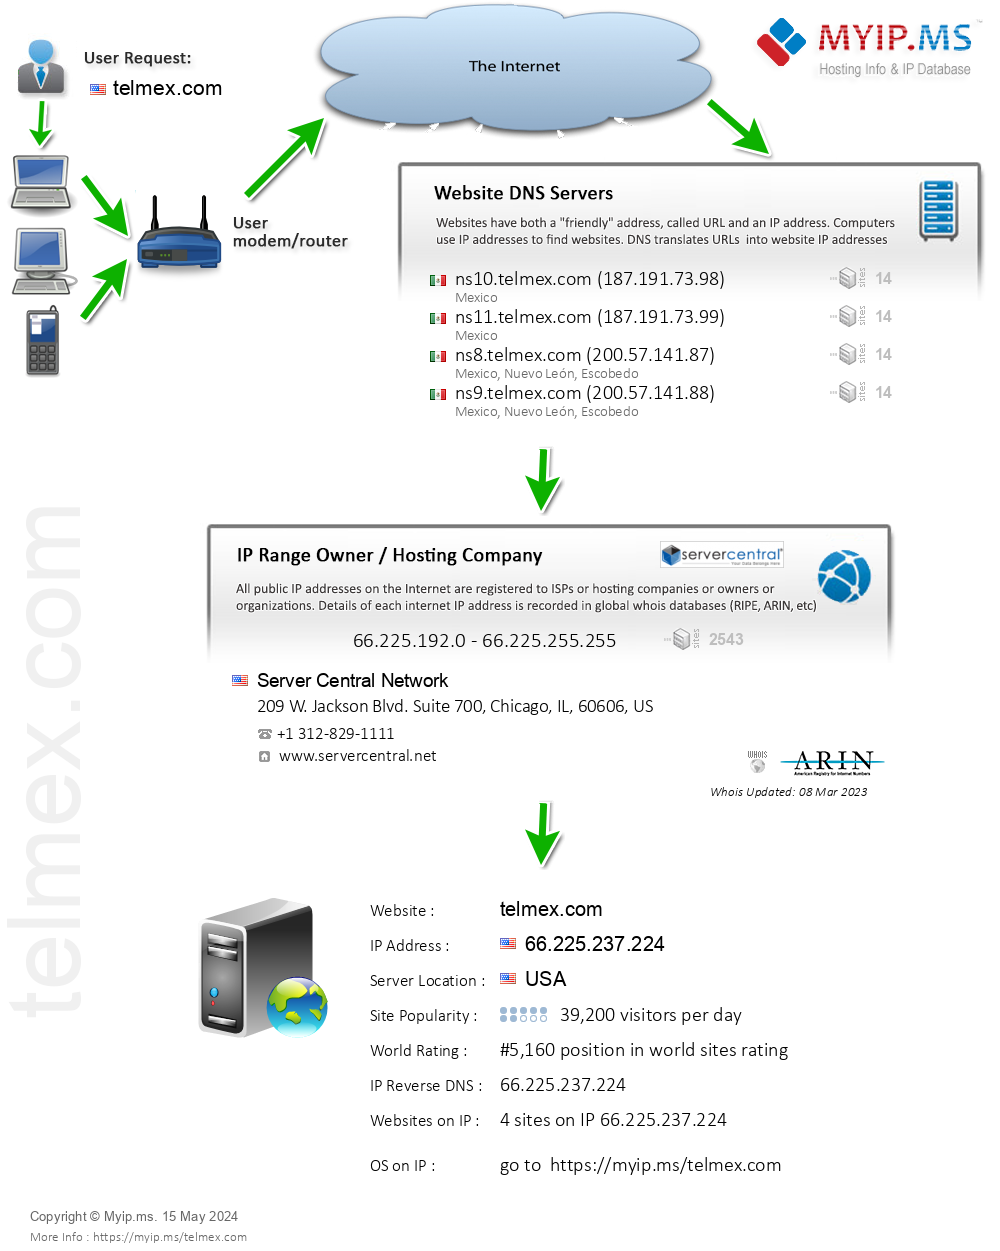 Telmex.com - Website Hosting Visual IP Diagram